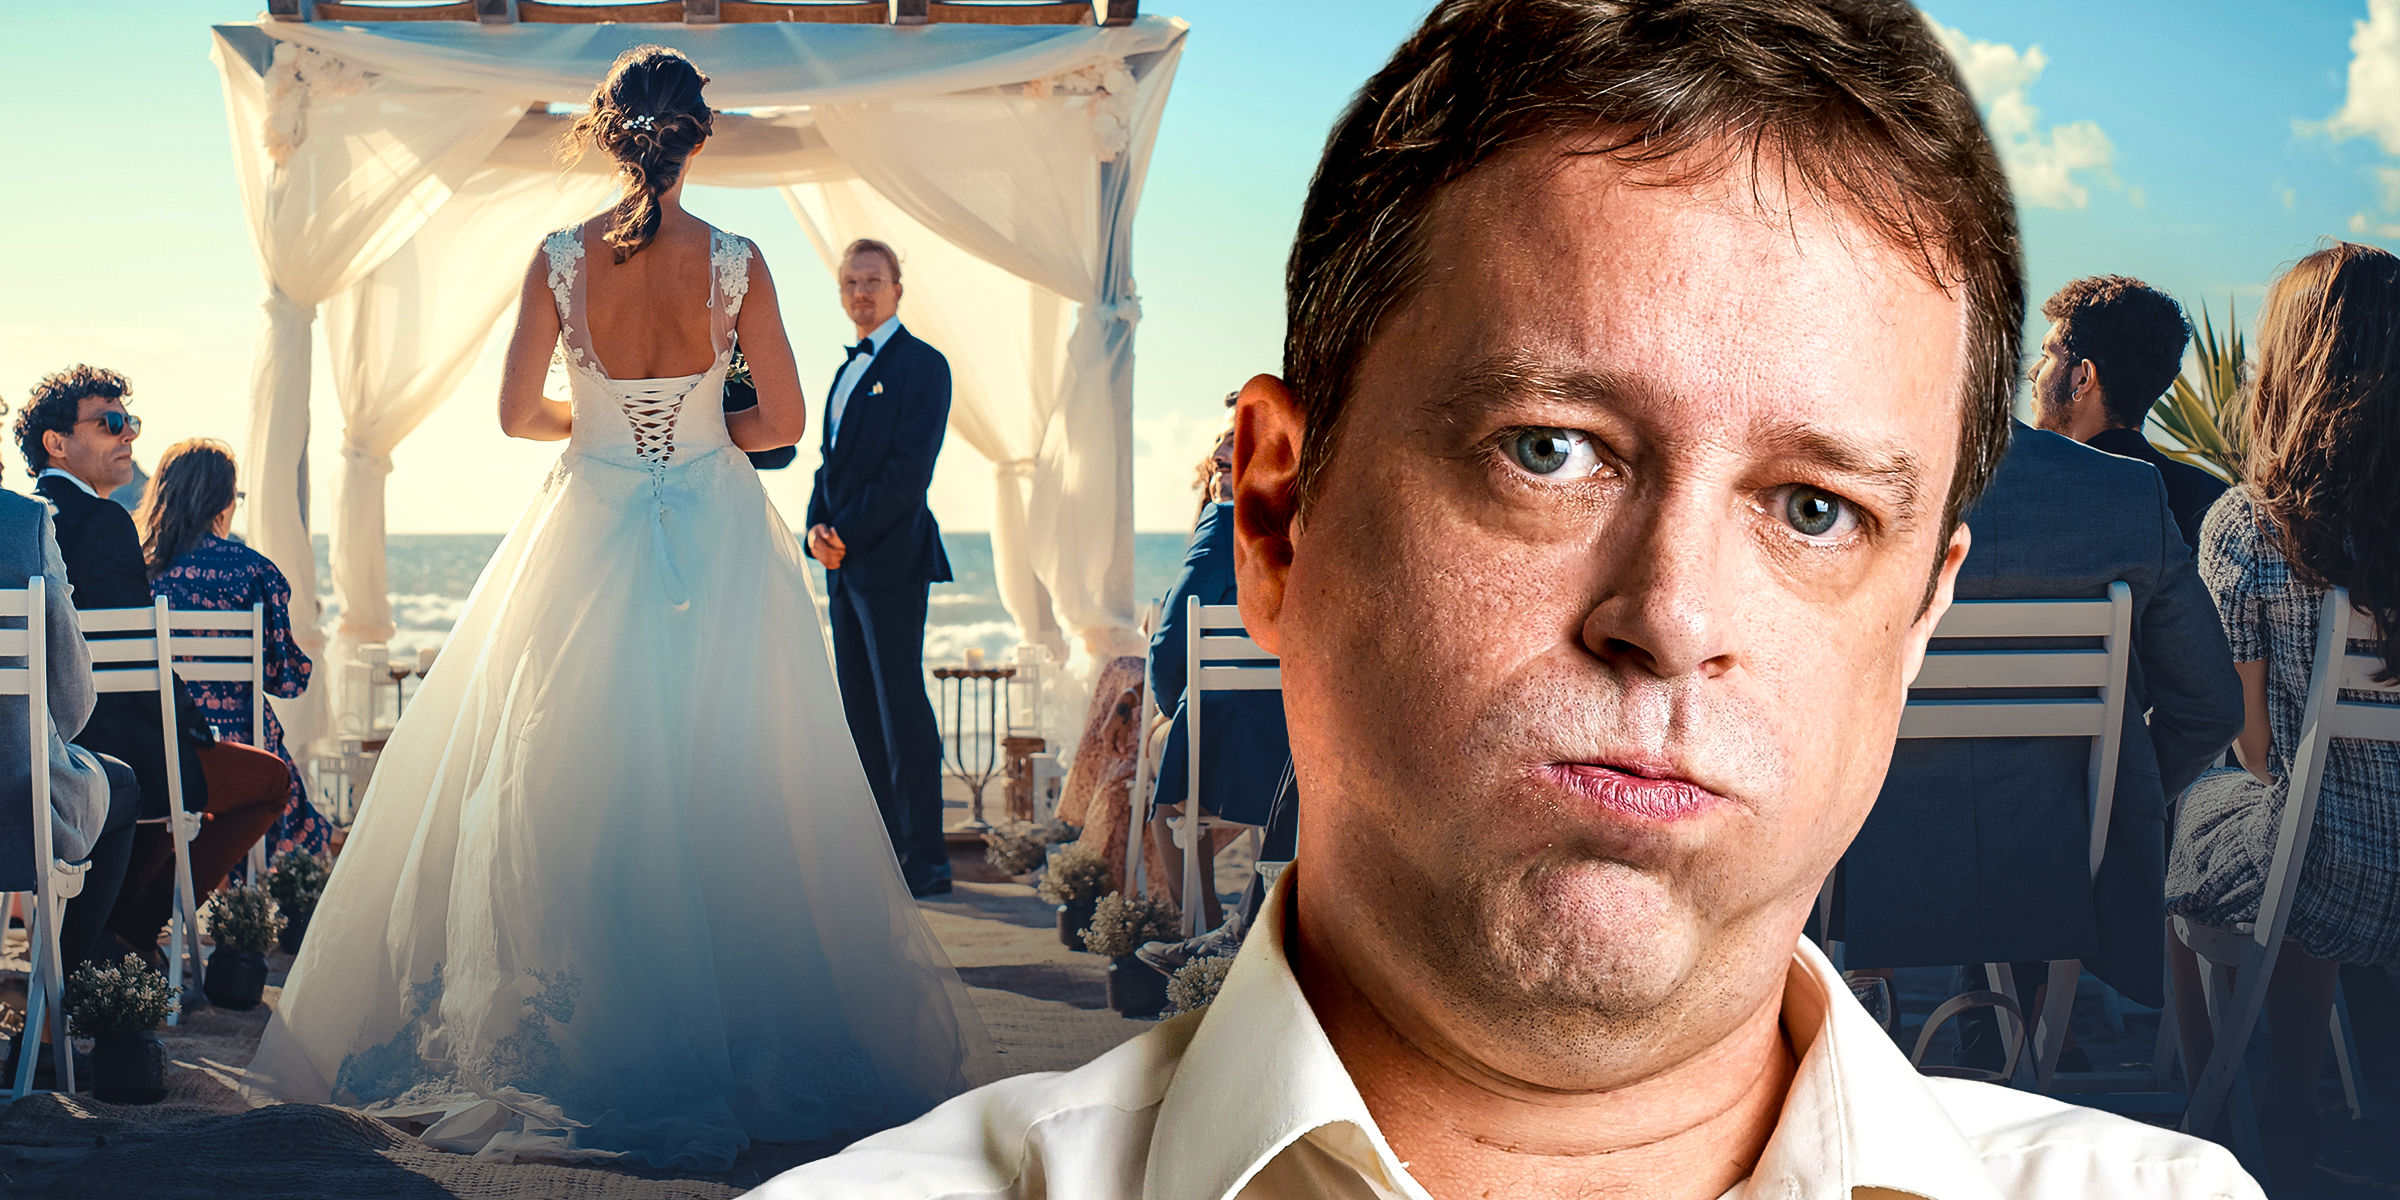 Un homme mécontent lors d'un mariage | Source : Shutterstock